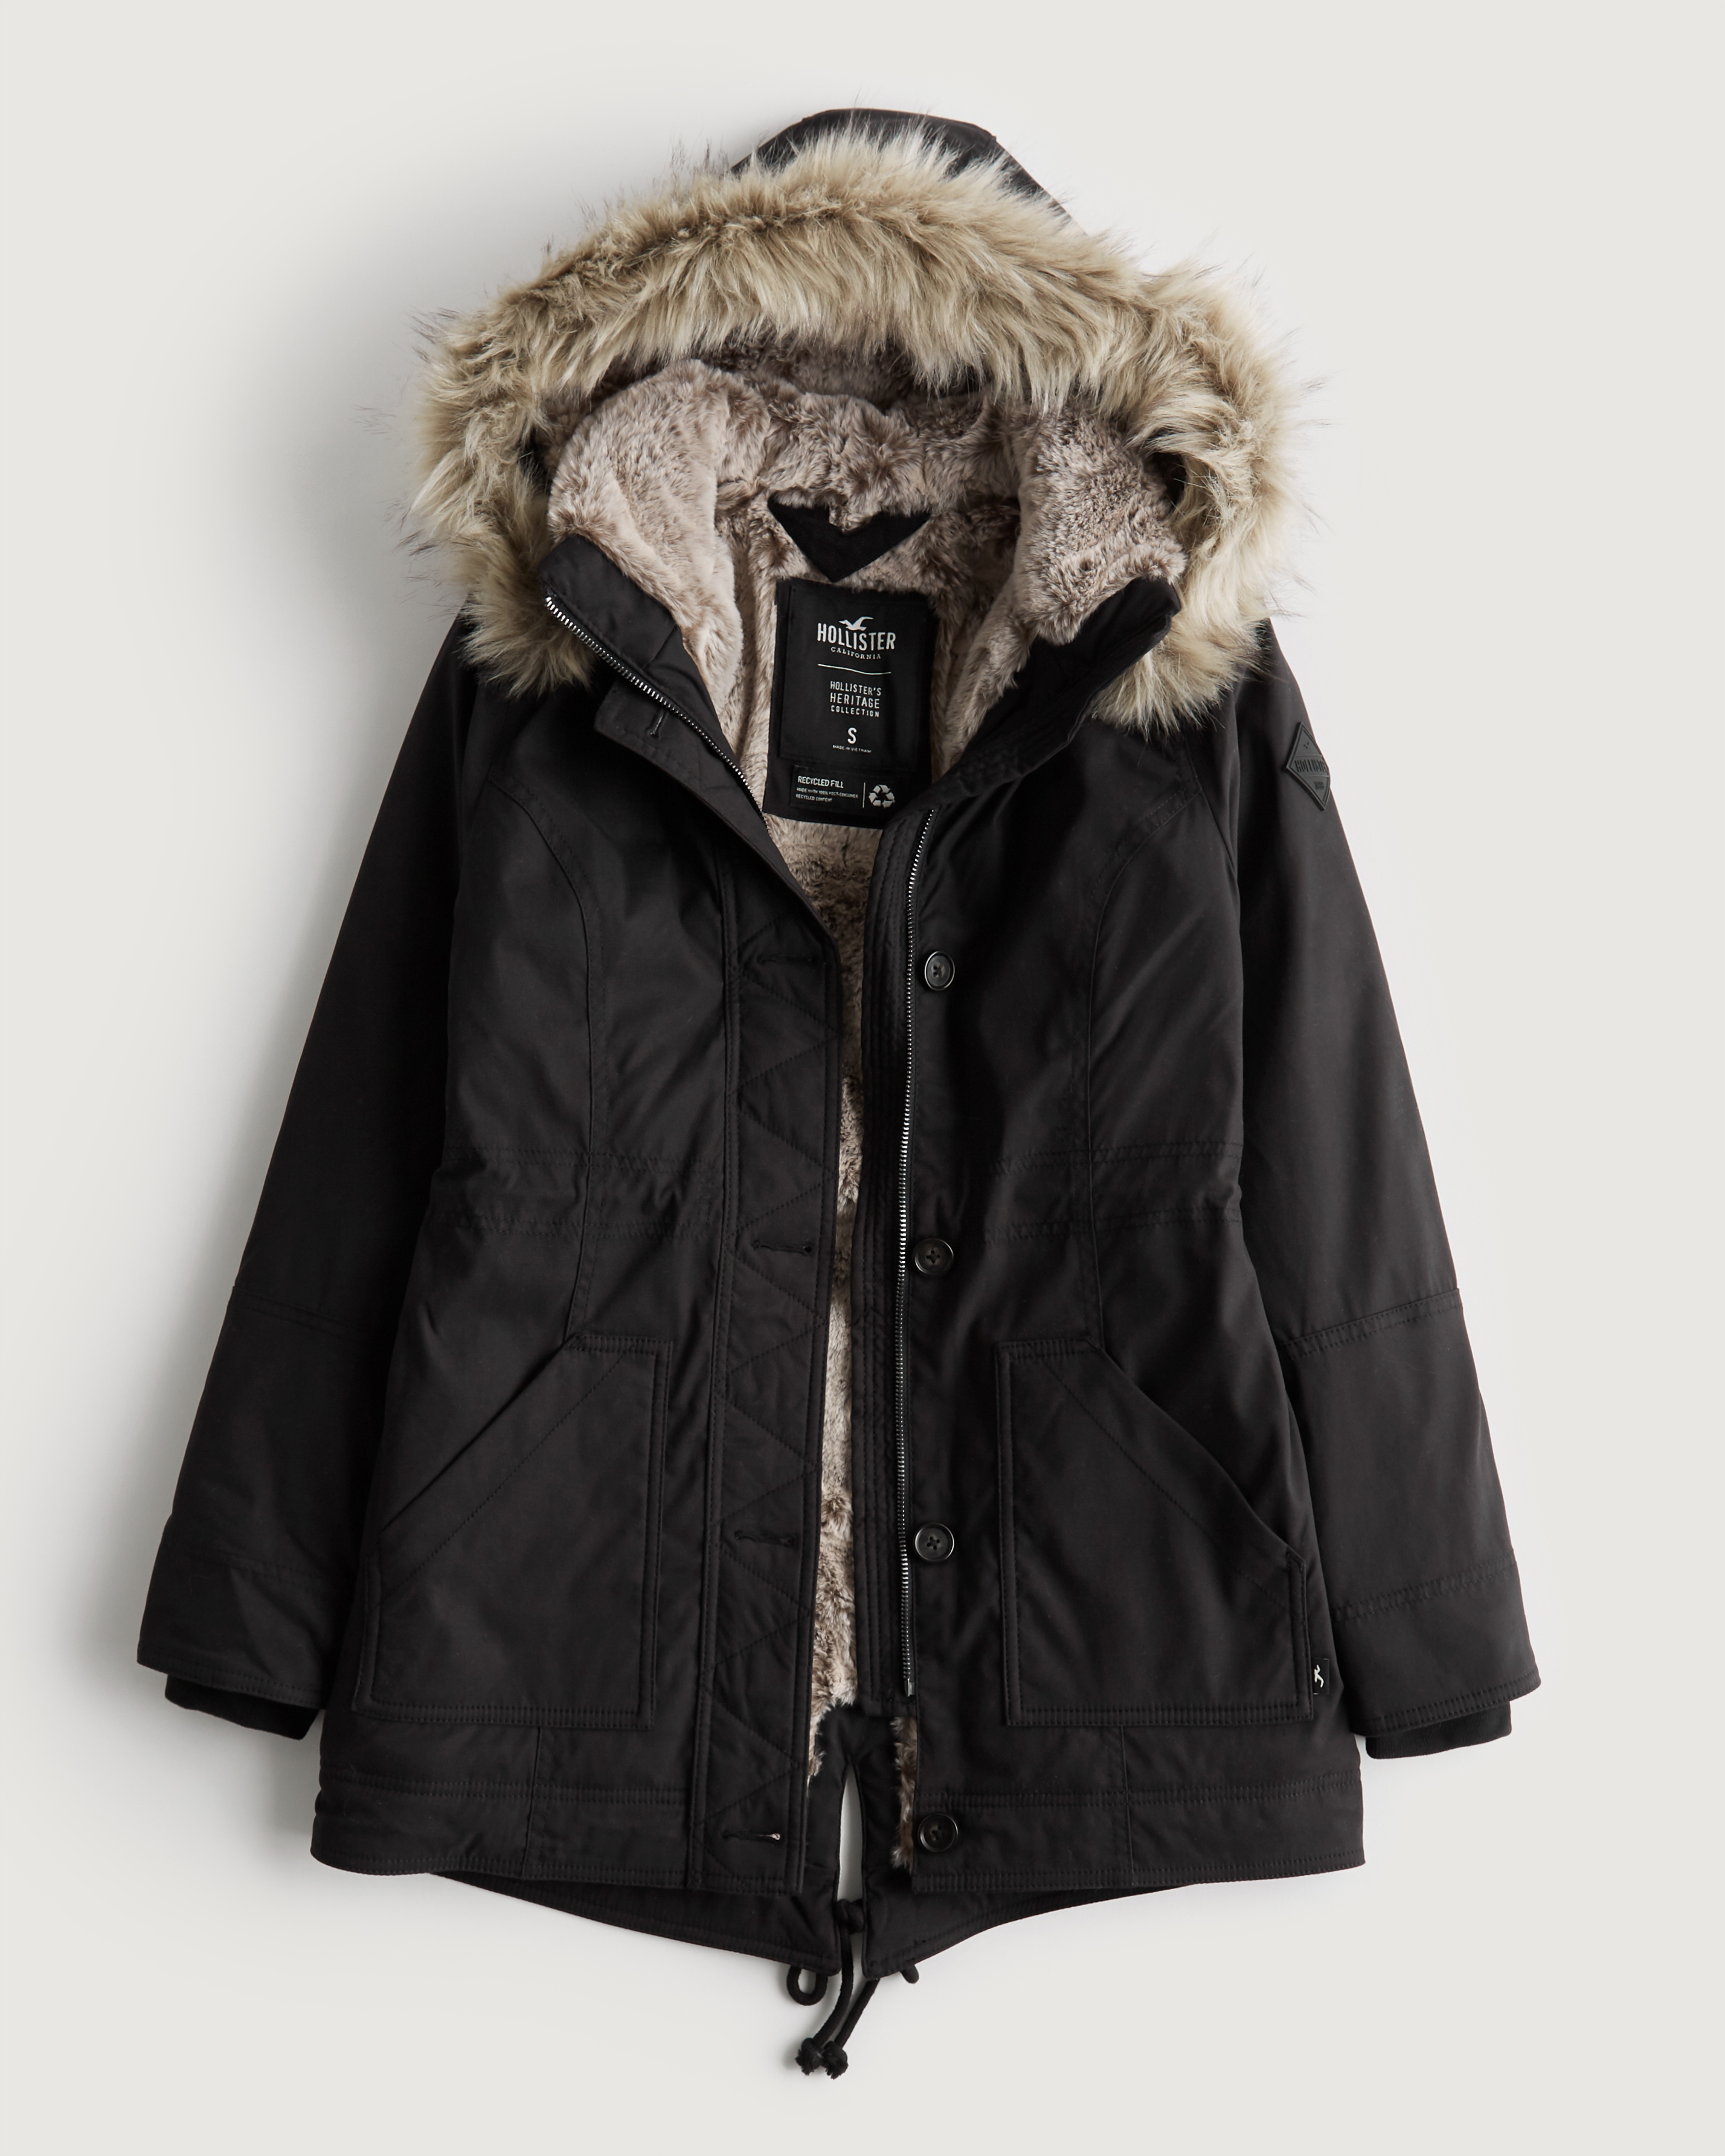 L) HOLLISTER Black Parka Jacket With Faux Fur Lined Hood, Men's